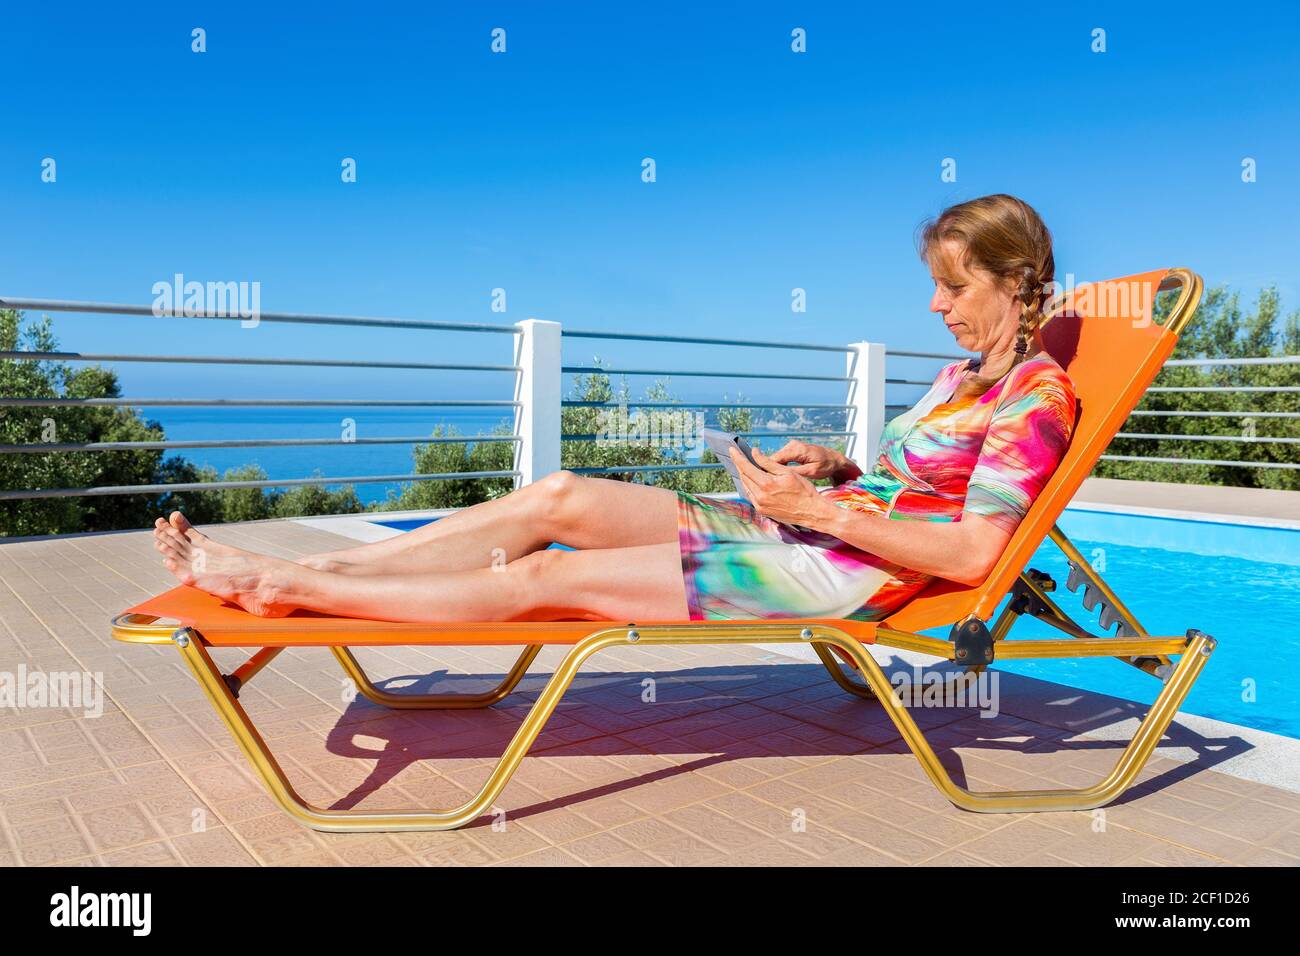 Femme hollandaise d'âge moyen allongé sur une chaise longue orange pour lire un comprimé près de la piscine Banque D'Images